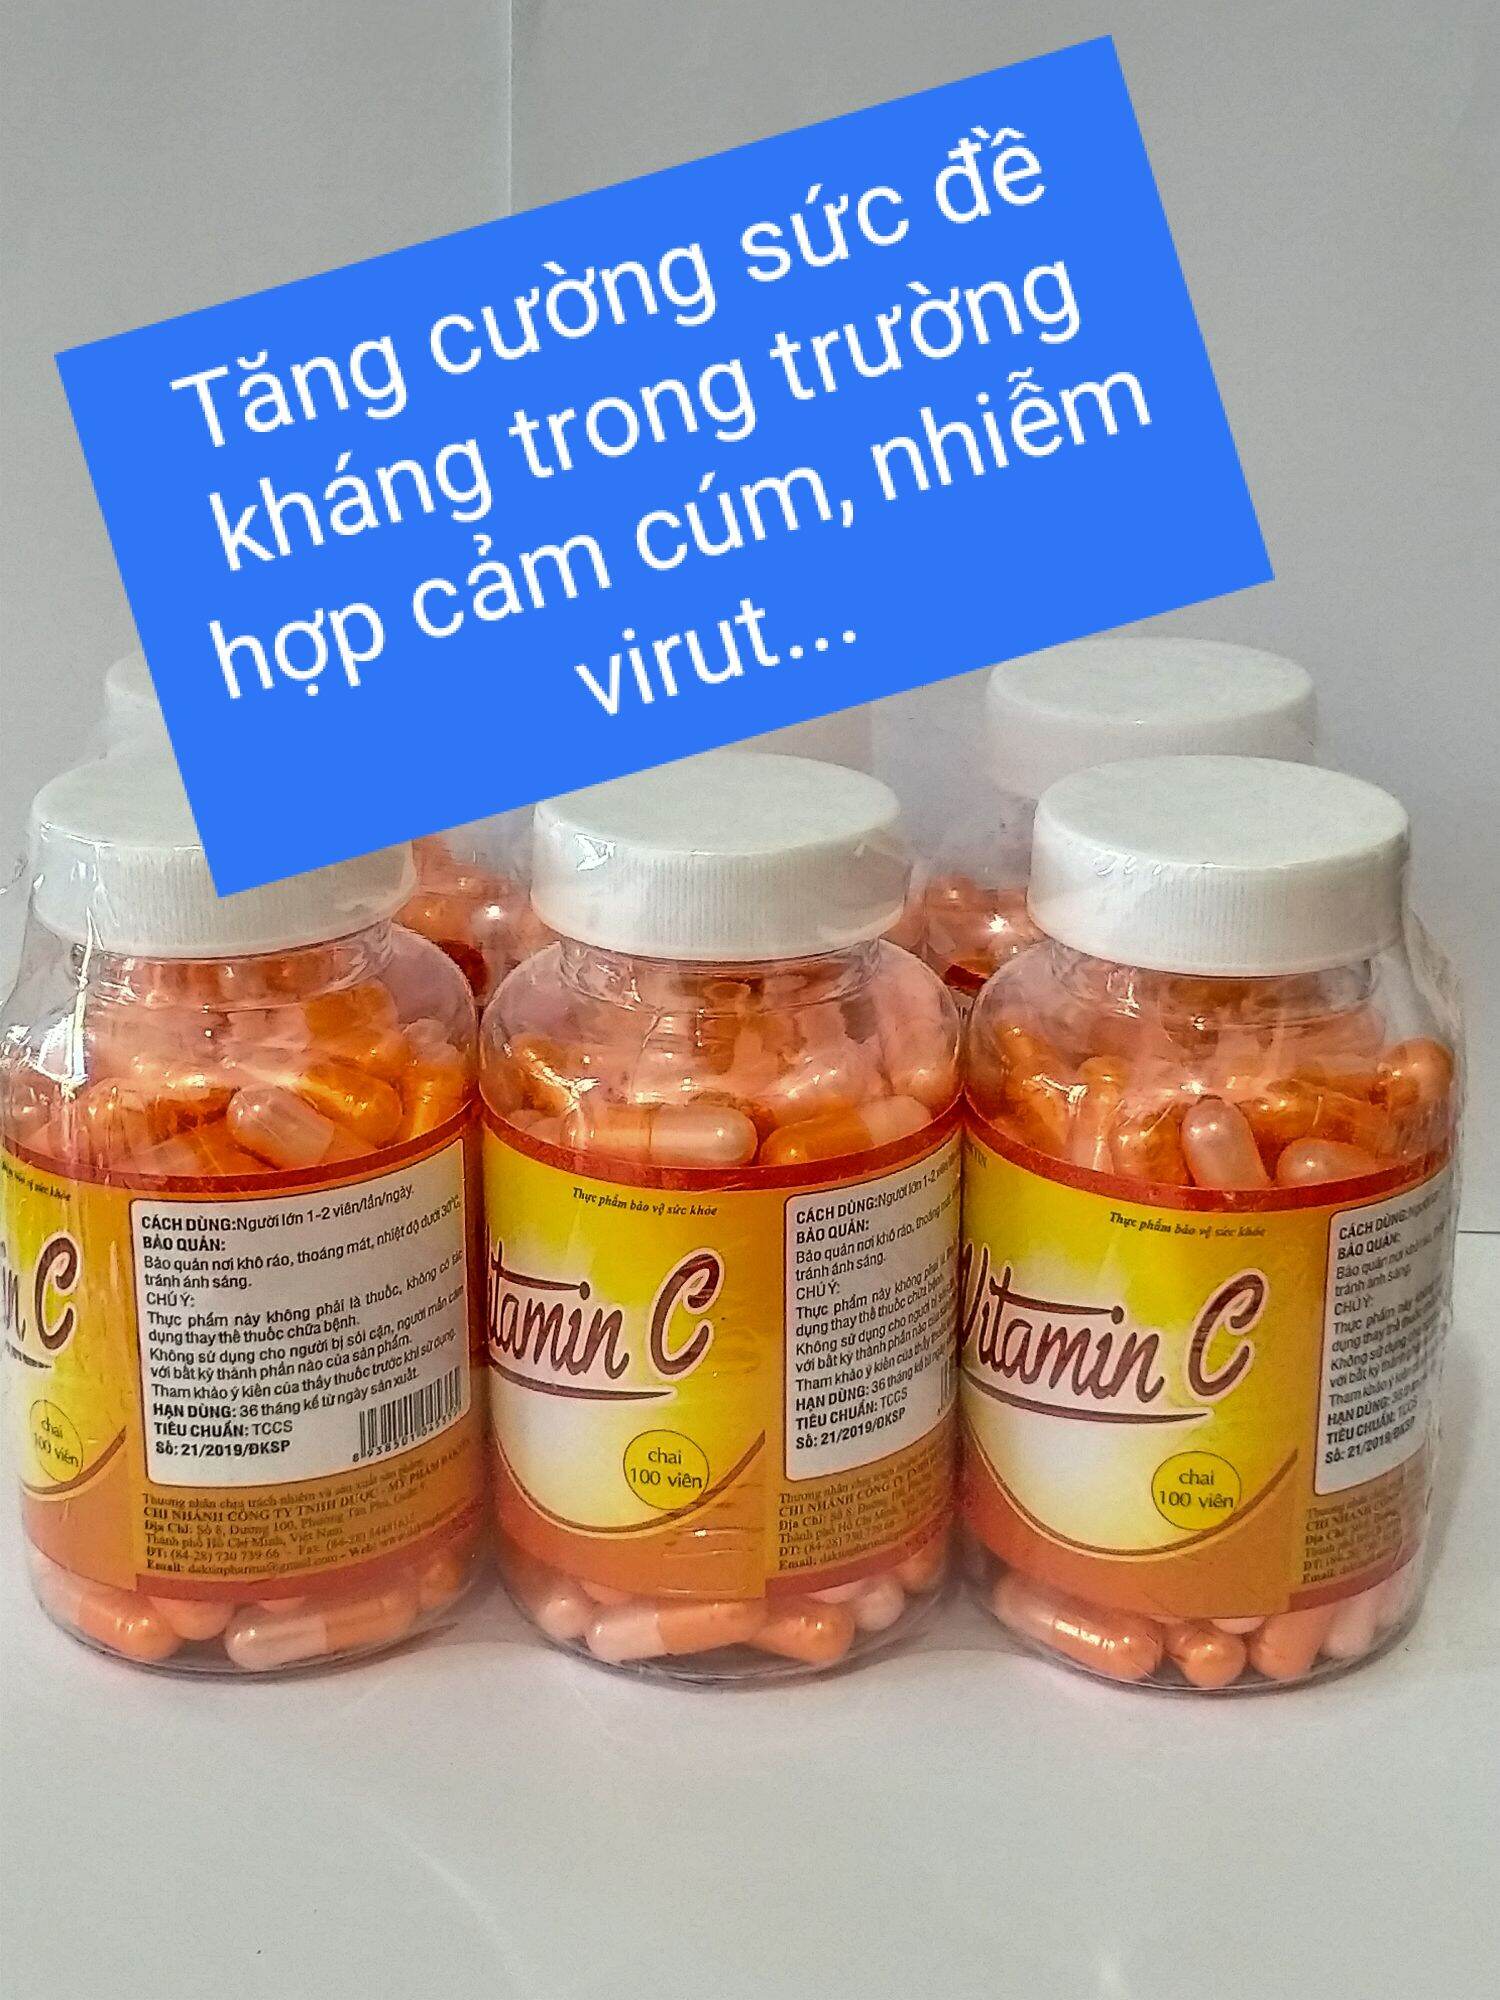 Viên uống VITAMIN C Chai 100 viên giúp nâng cao sức đề kháng, hỗ trợ giảm xuất huyết dưới da, niêm mạc, chảy máu cam ( Thực Phẩm bảo vệ sức khỏe )